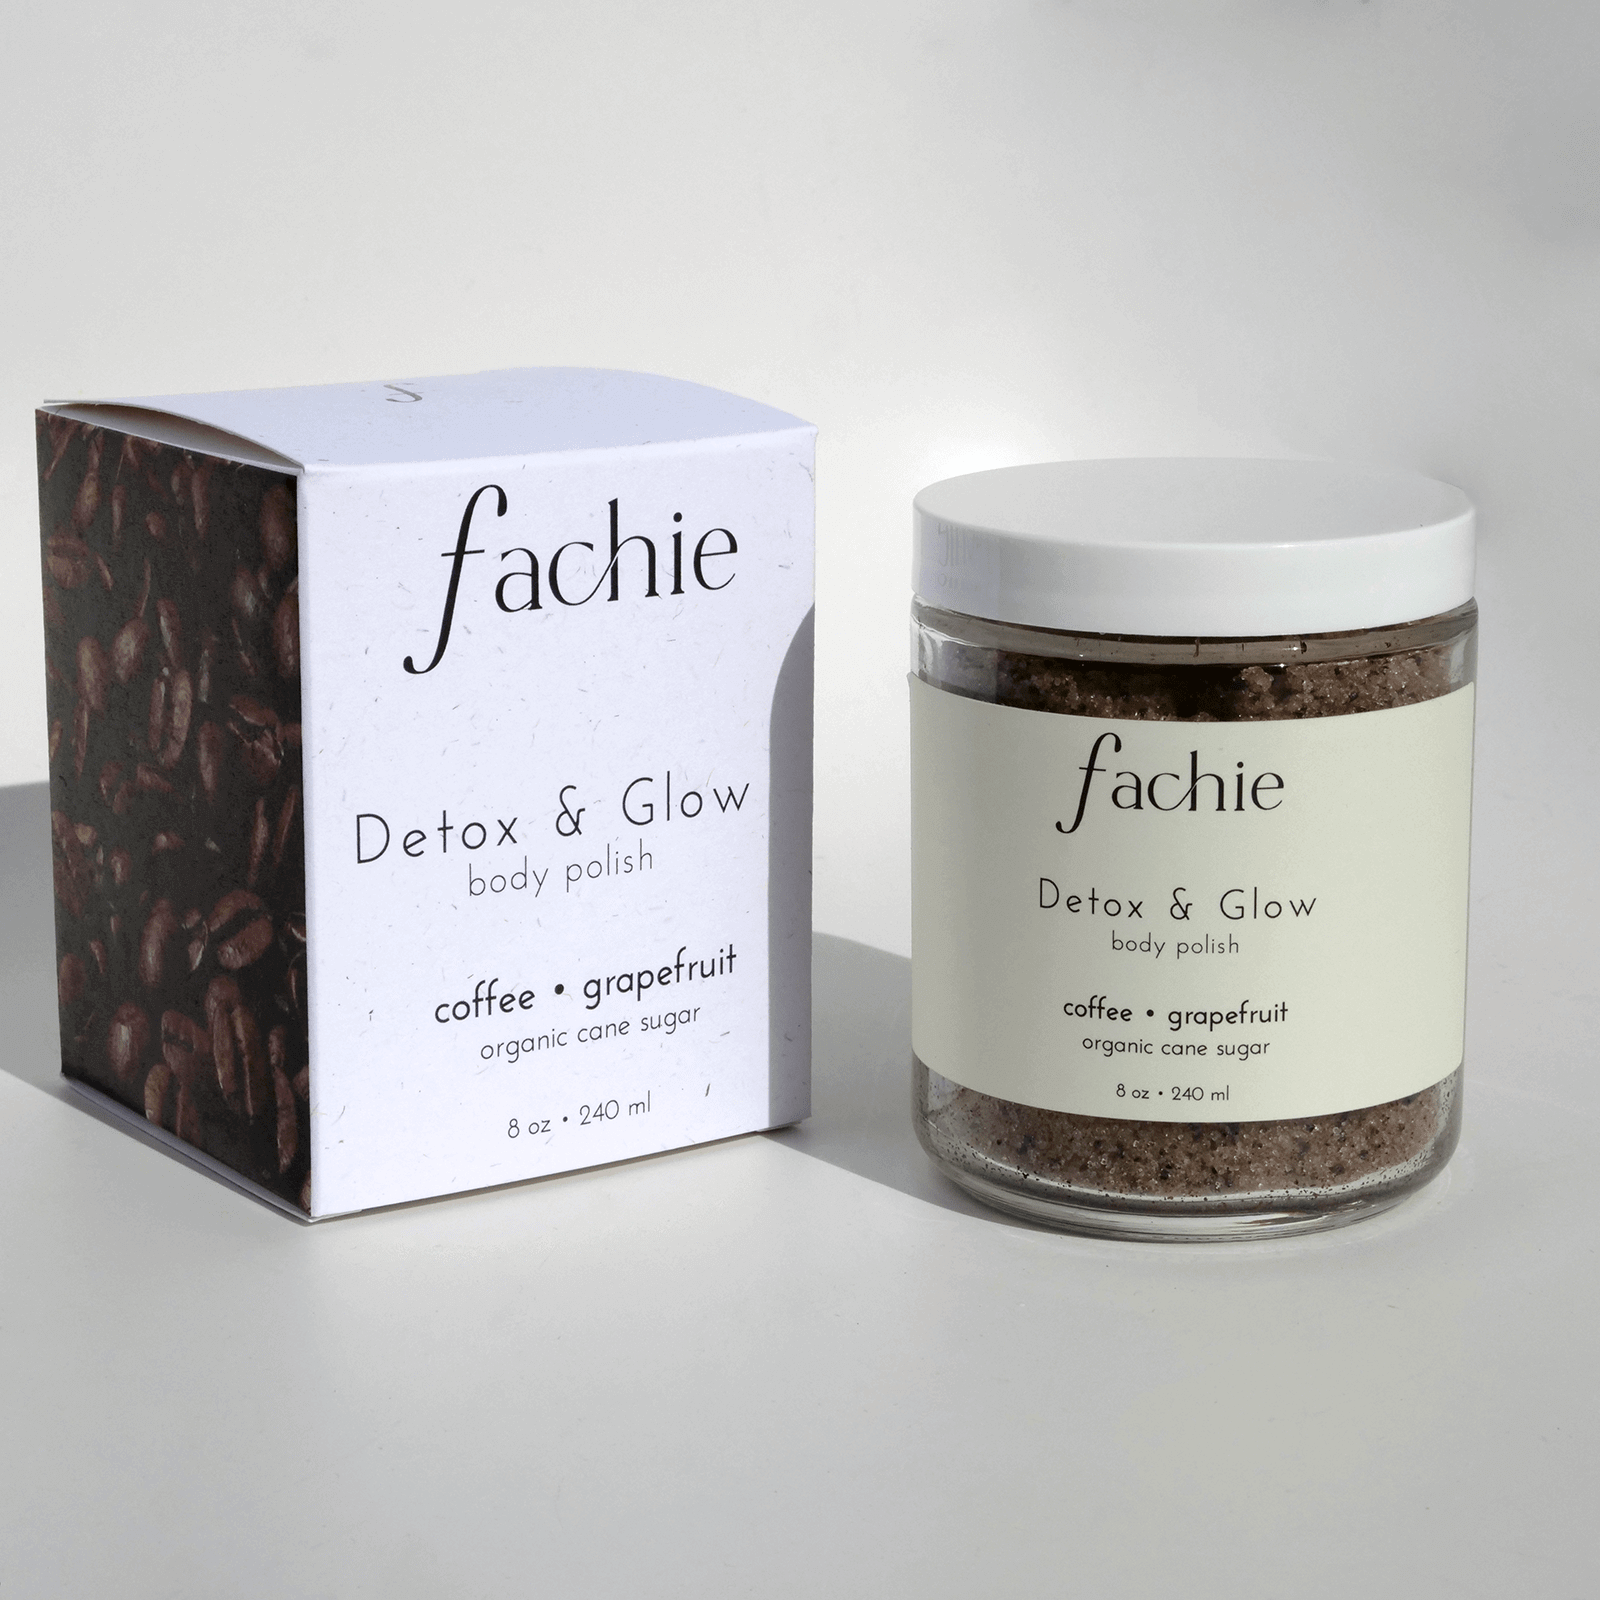 Detox & Glow Coffee Body Polish by Fachie